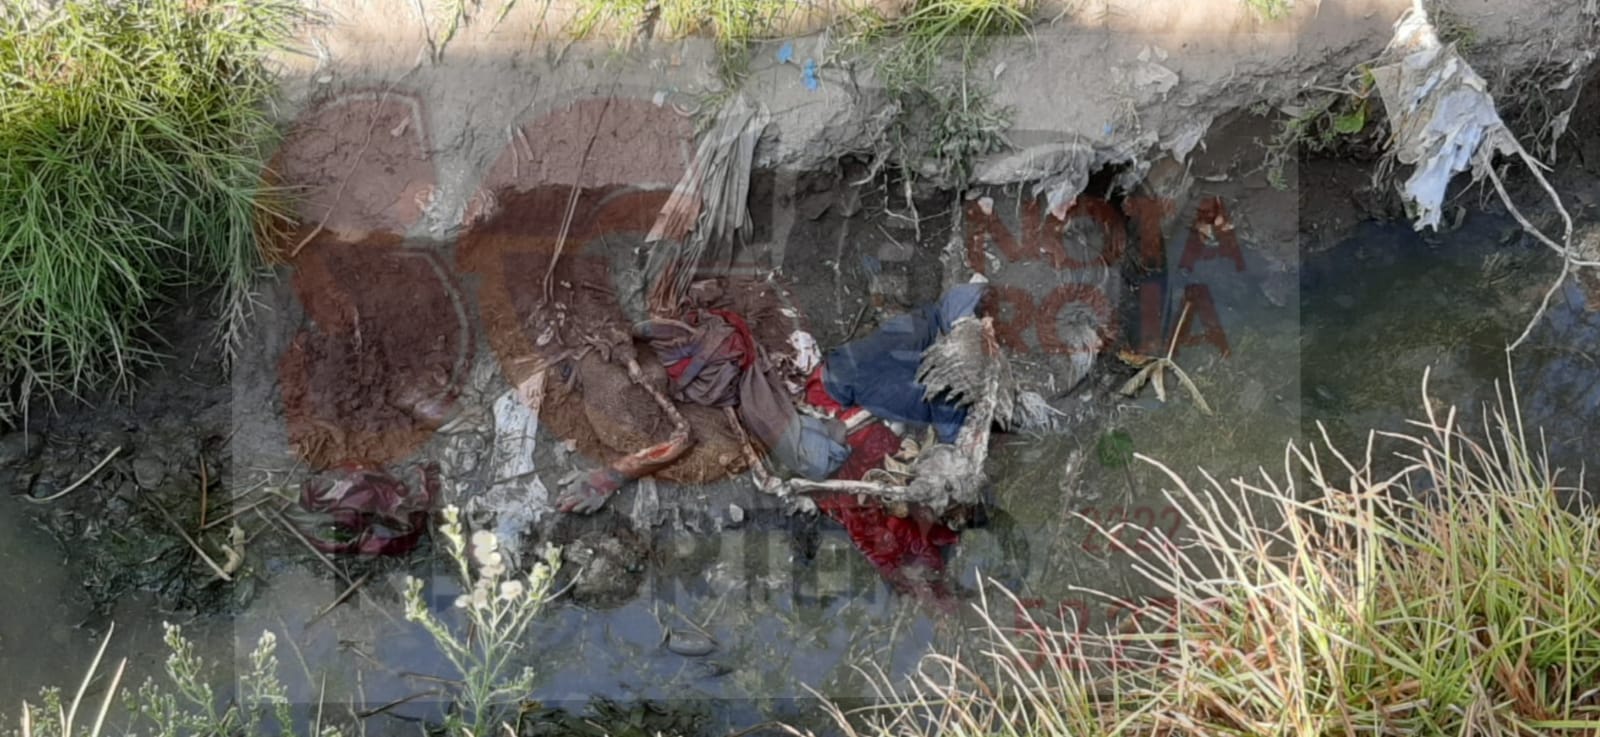 Campesinos encuentran el cadáver de un hombre al fondo de barranca en Acatzingo